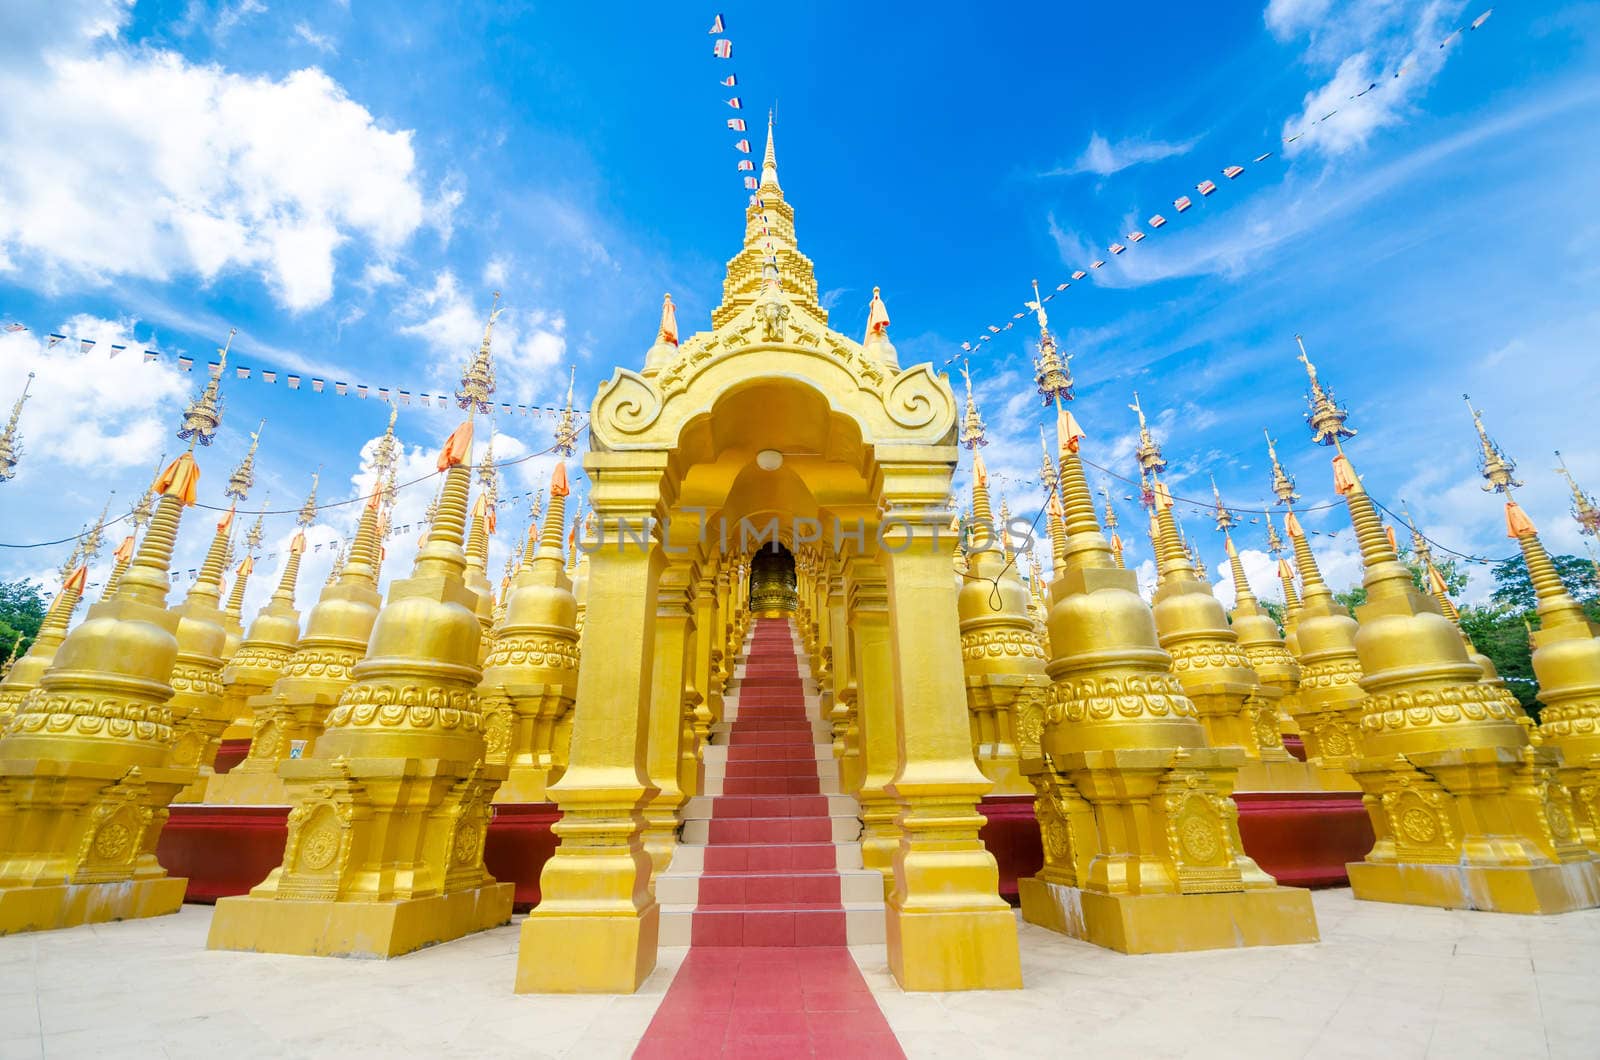 Golden pagoda at Wat pa sawang boon temple Thailand by Gamjai